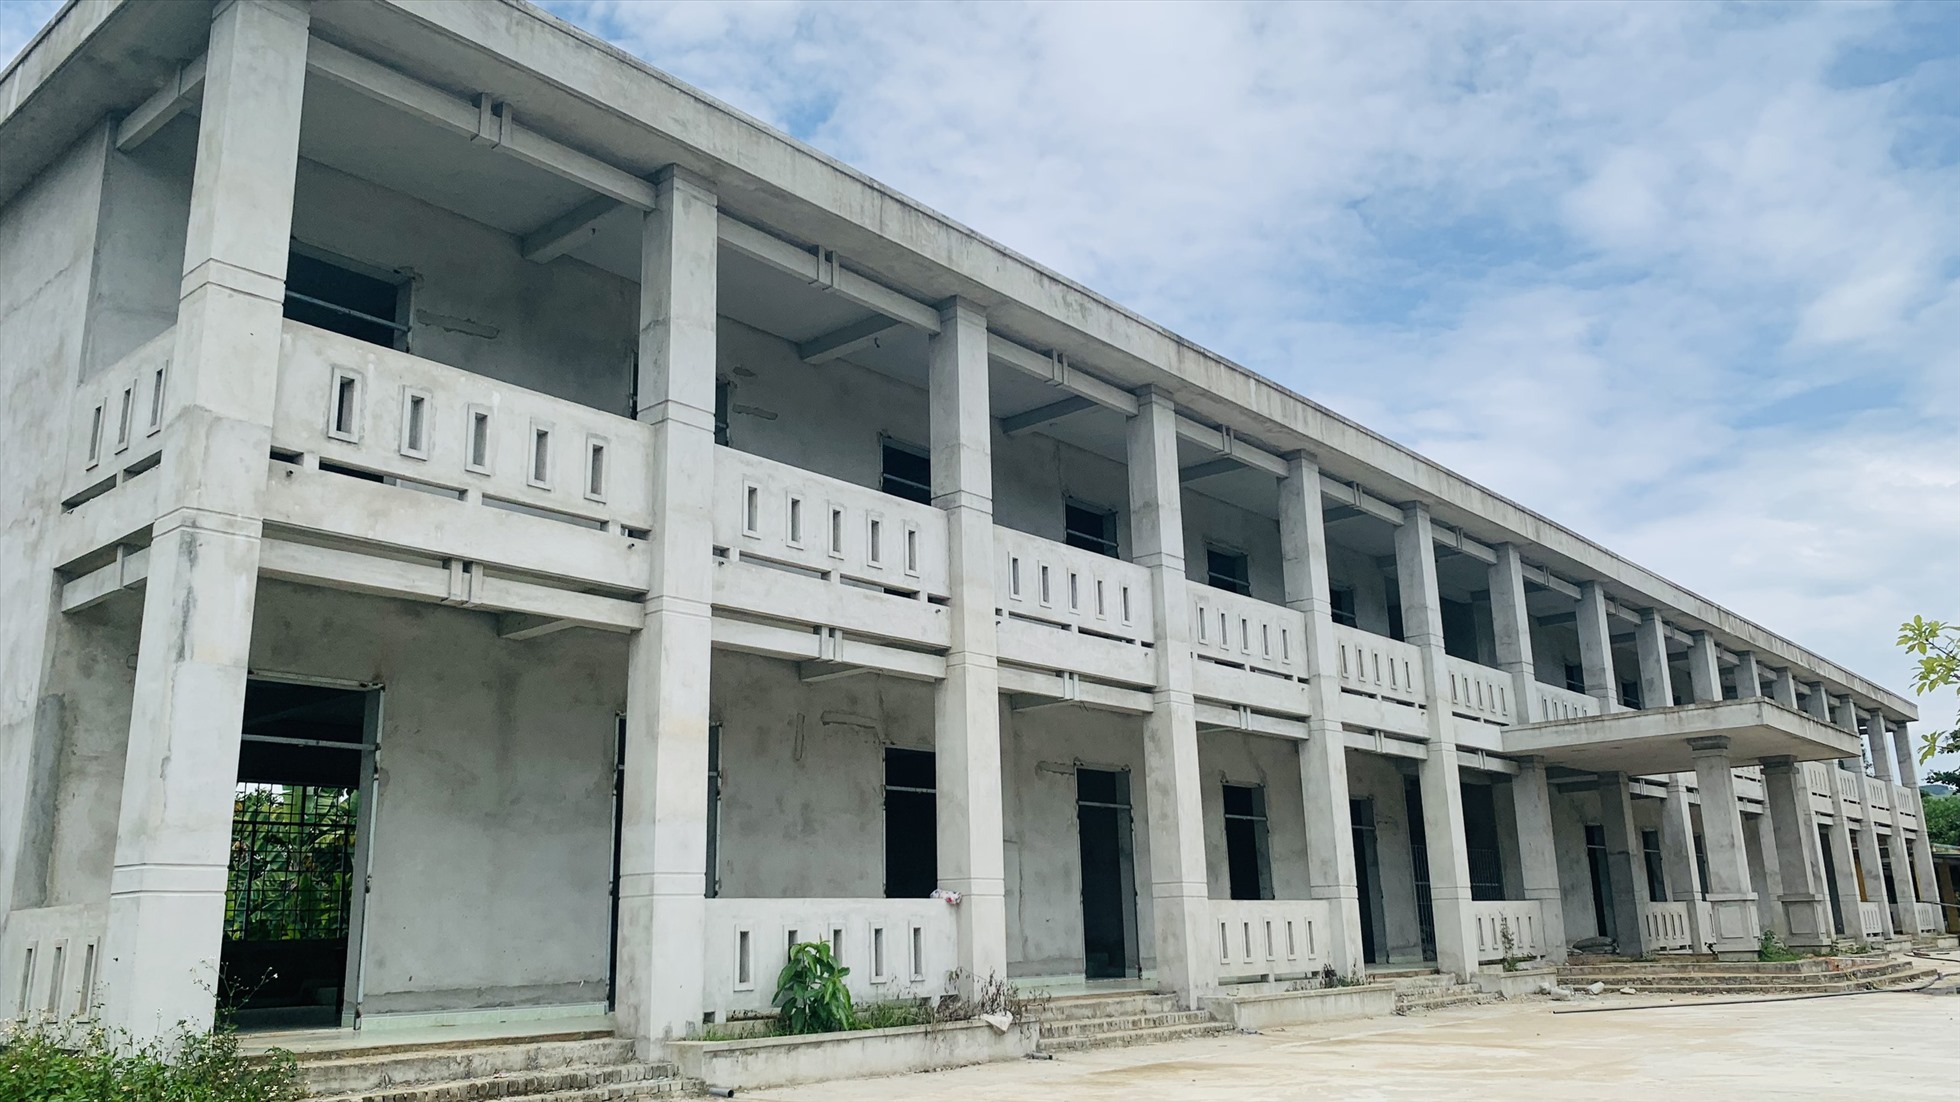 Trường TH Nguyễn Chí Thanh (xã Bình Lãnh) là một trong 3 dự án trường học bị chậm tiến độ tại huyện Thăng Bình do các công ti sân sau của Dũng thi công. Dự án có tổng kinh phí hơn 8,3 tỉ đồng, phục vụ mục tiêu nâng chuẩn quốc gia. Ảnh Hoàng Bin